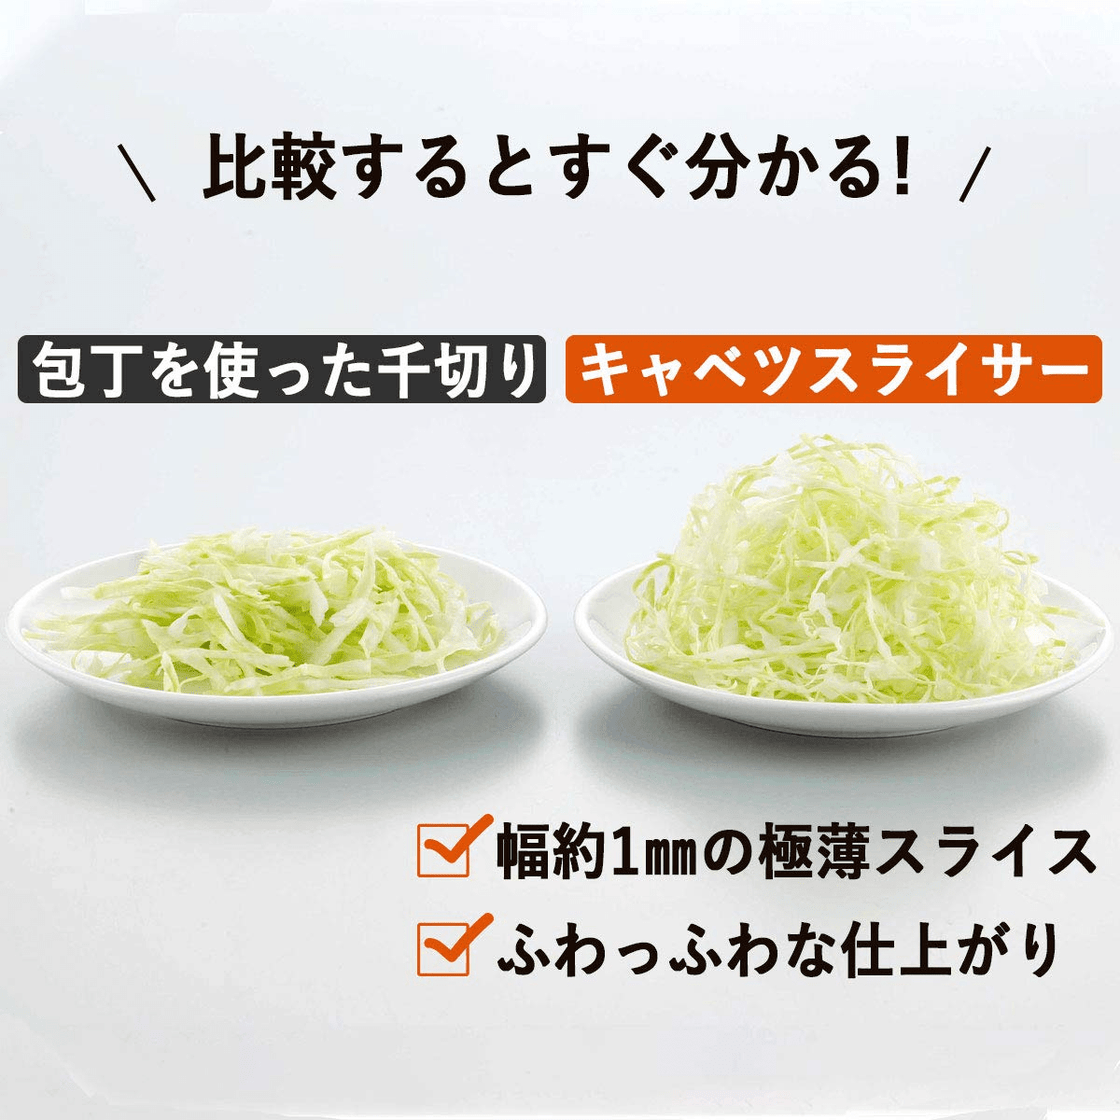 Shimomura Cabbage Slicer 35950 Shredder Grater Cutter Vegetable Made i –  WAFUU JAPAN